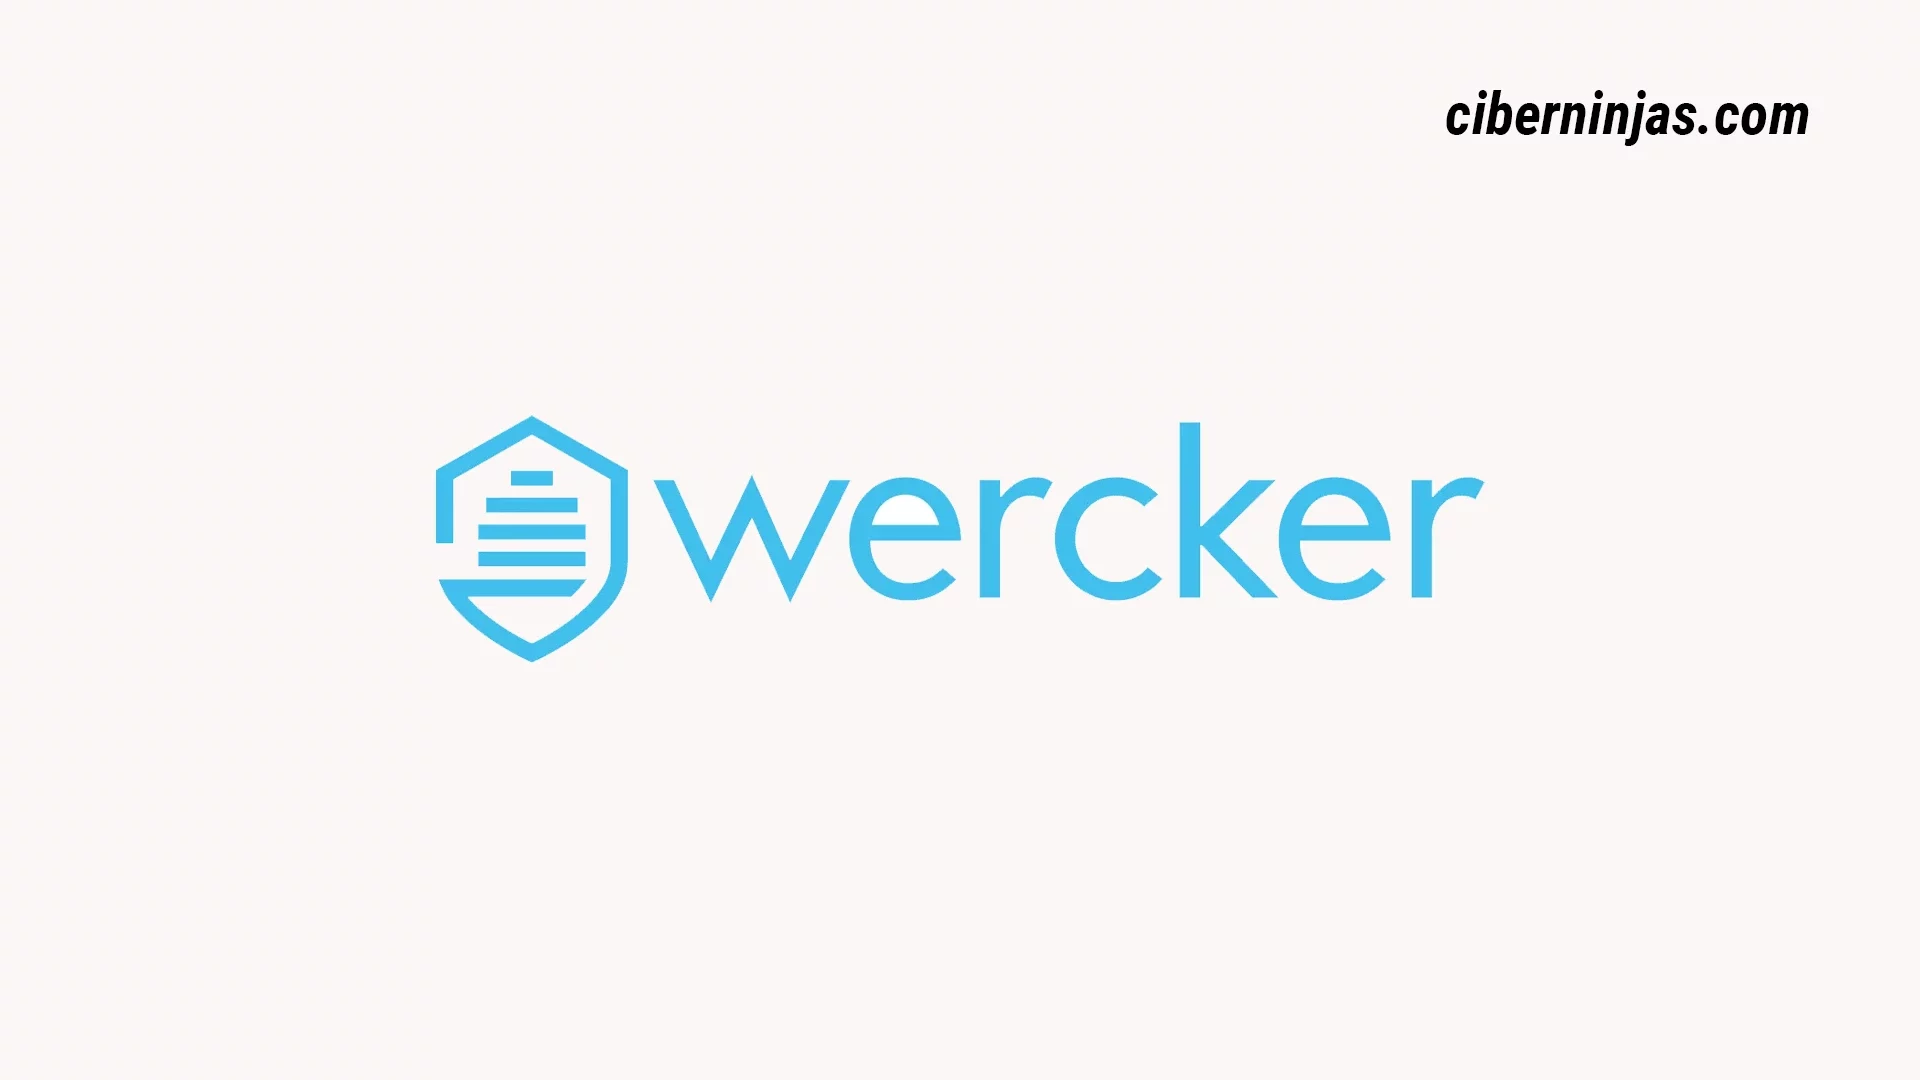 Logotipo del Software de CI/CD: Wercker